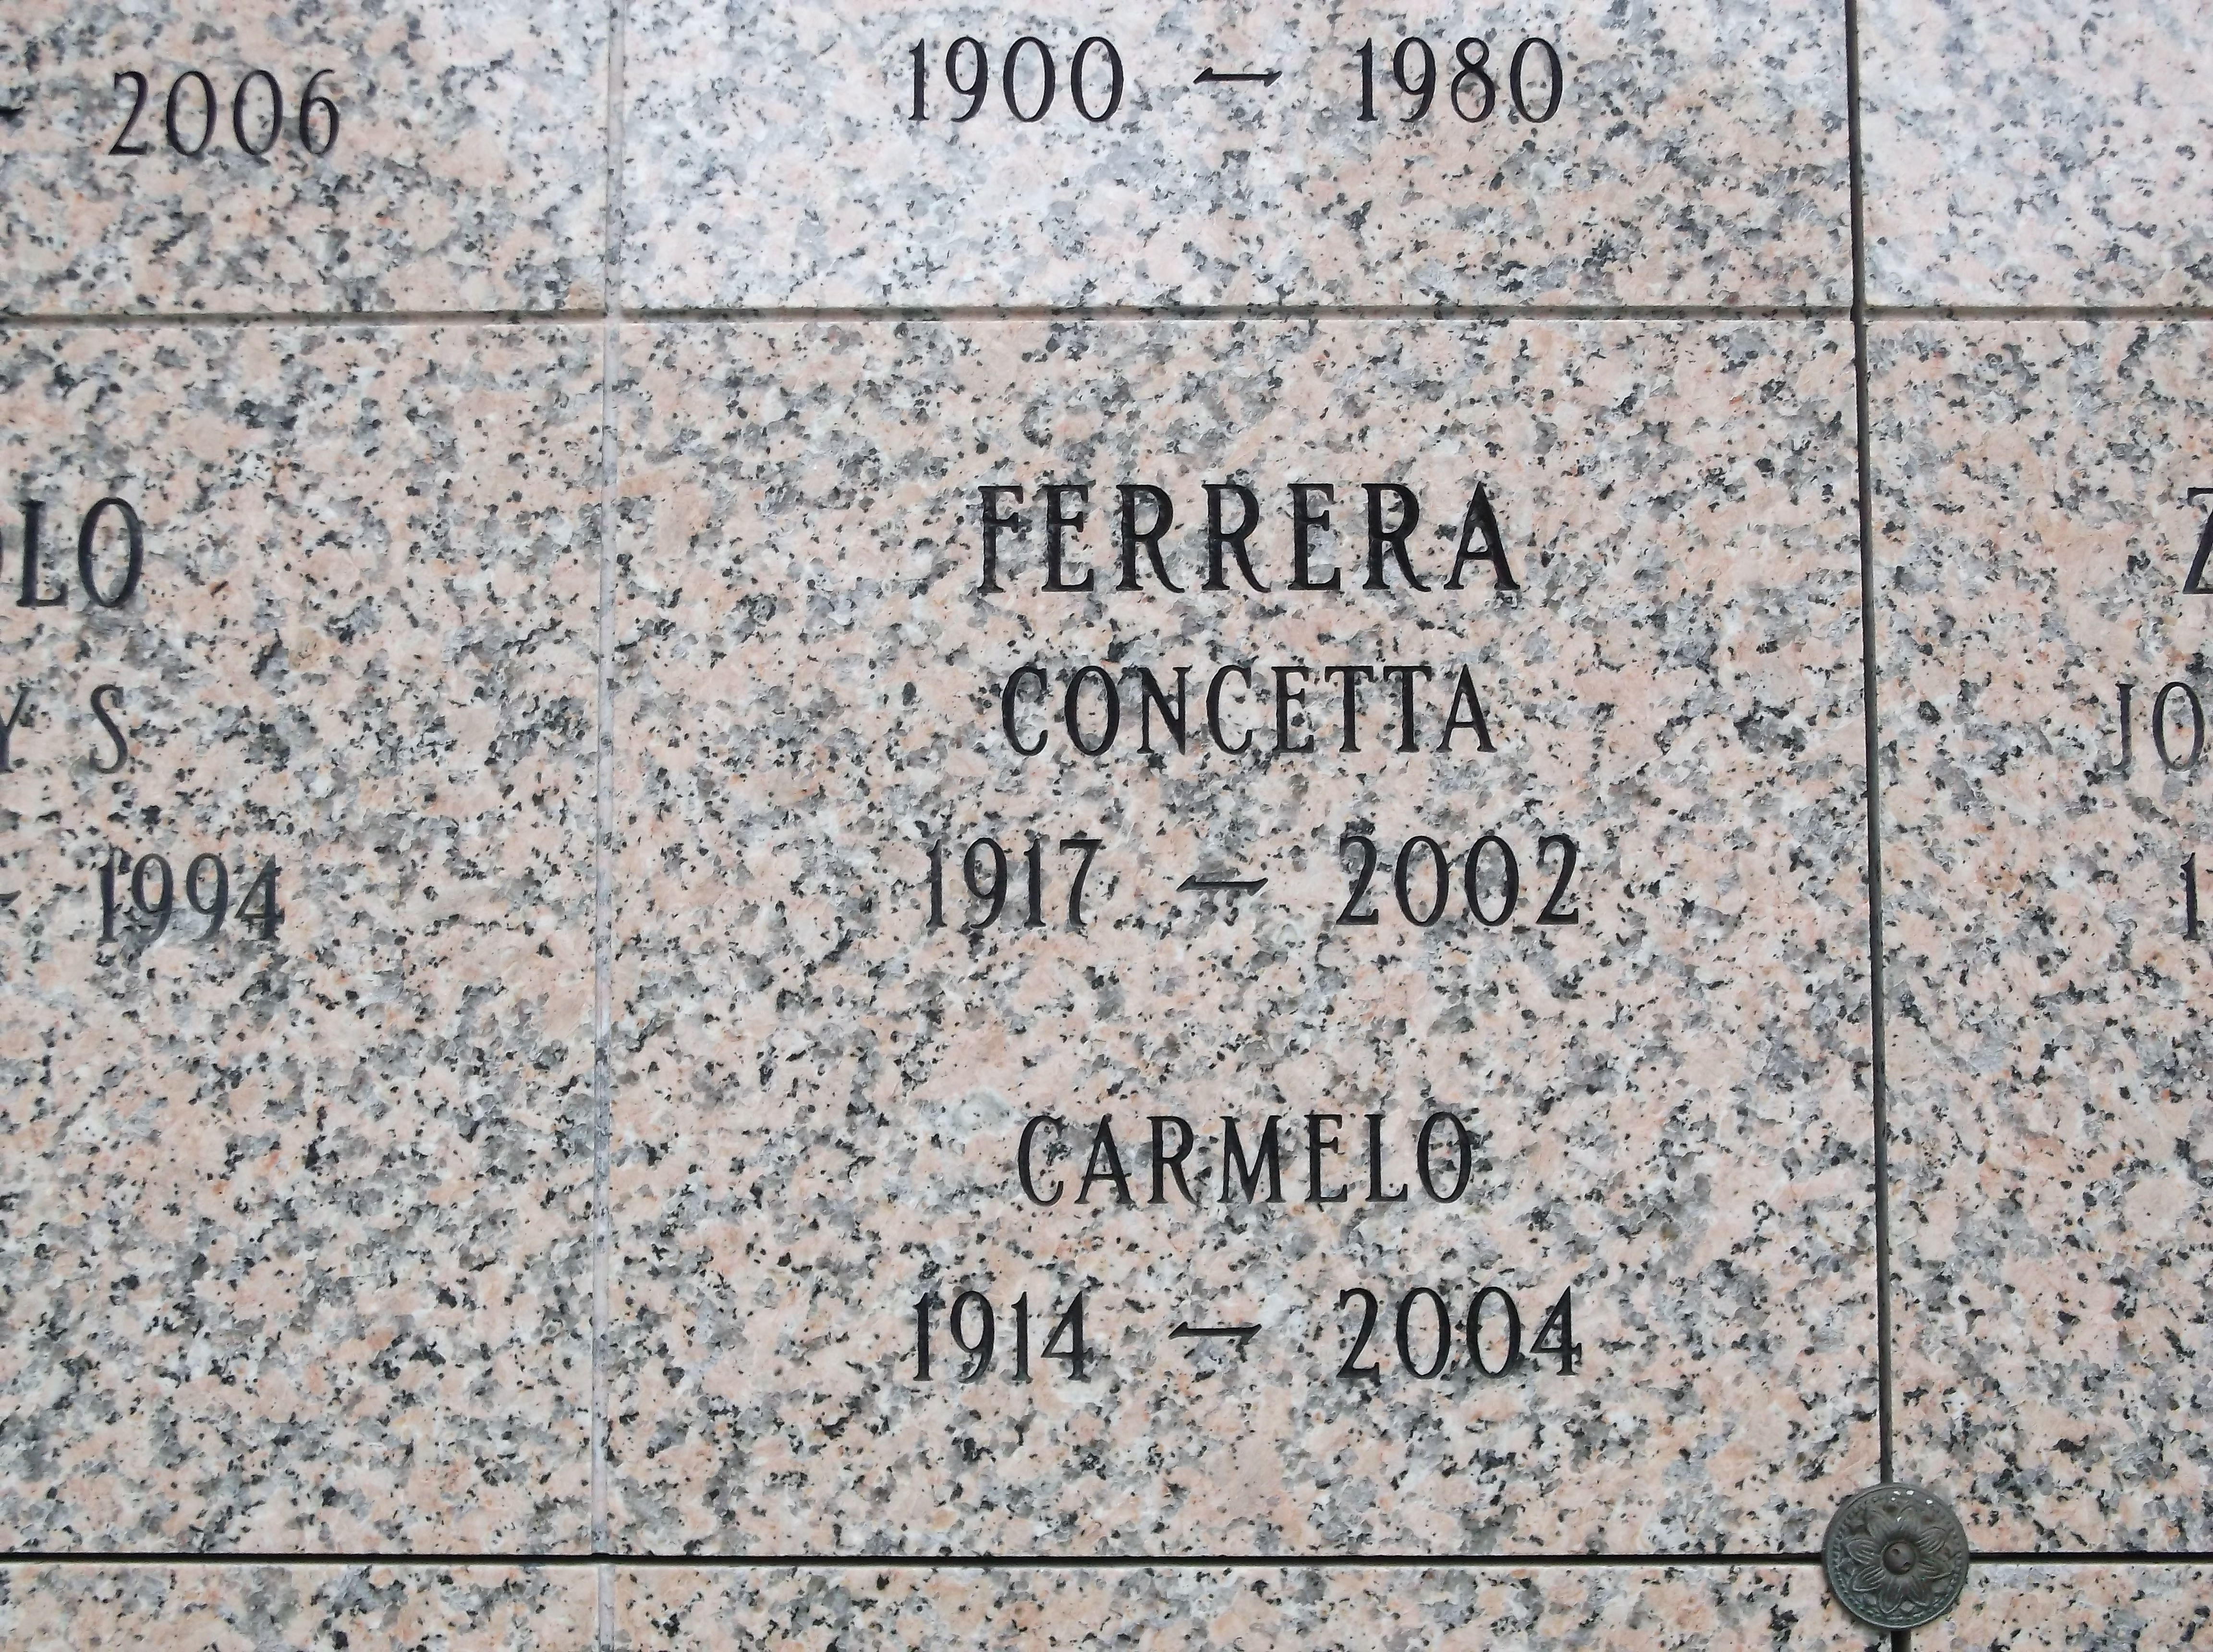 Carmelo Ferrera